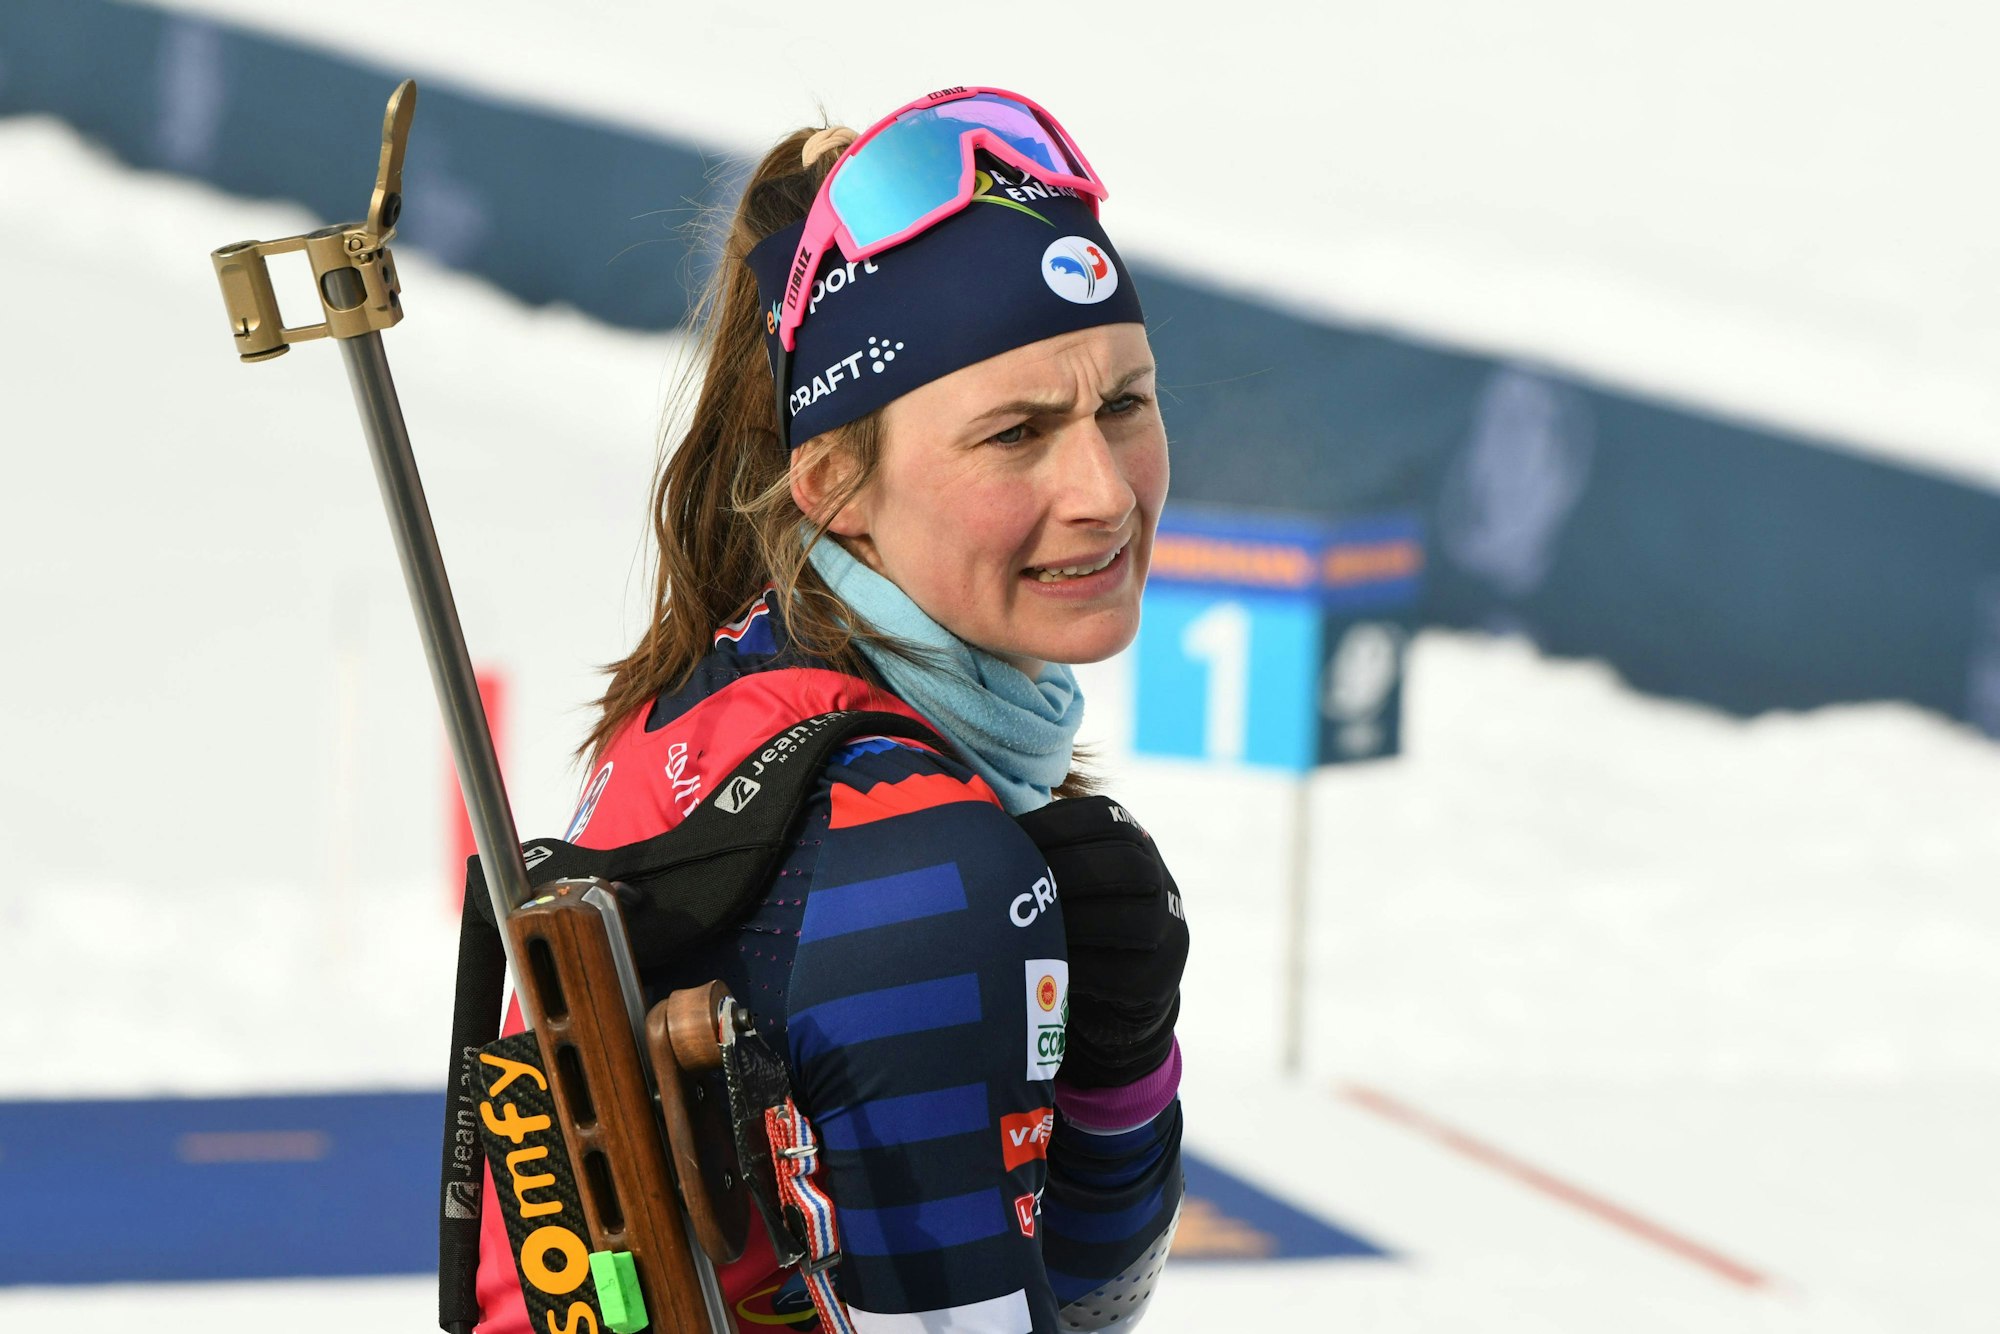 Justine Braisaz-Bouchet beim Biathlon-Weltcup in Antholz.